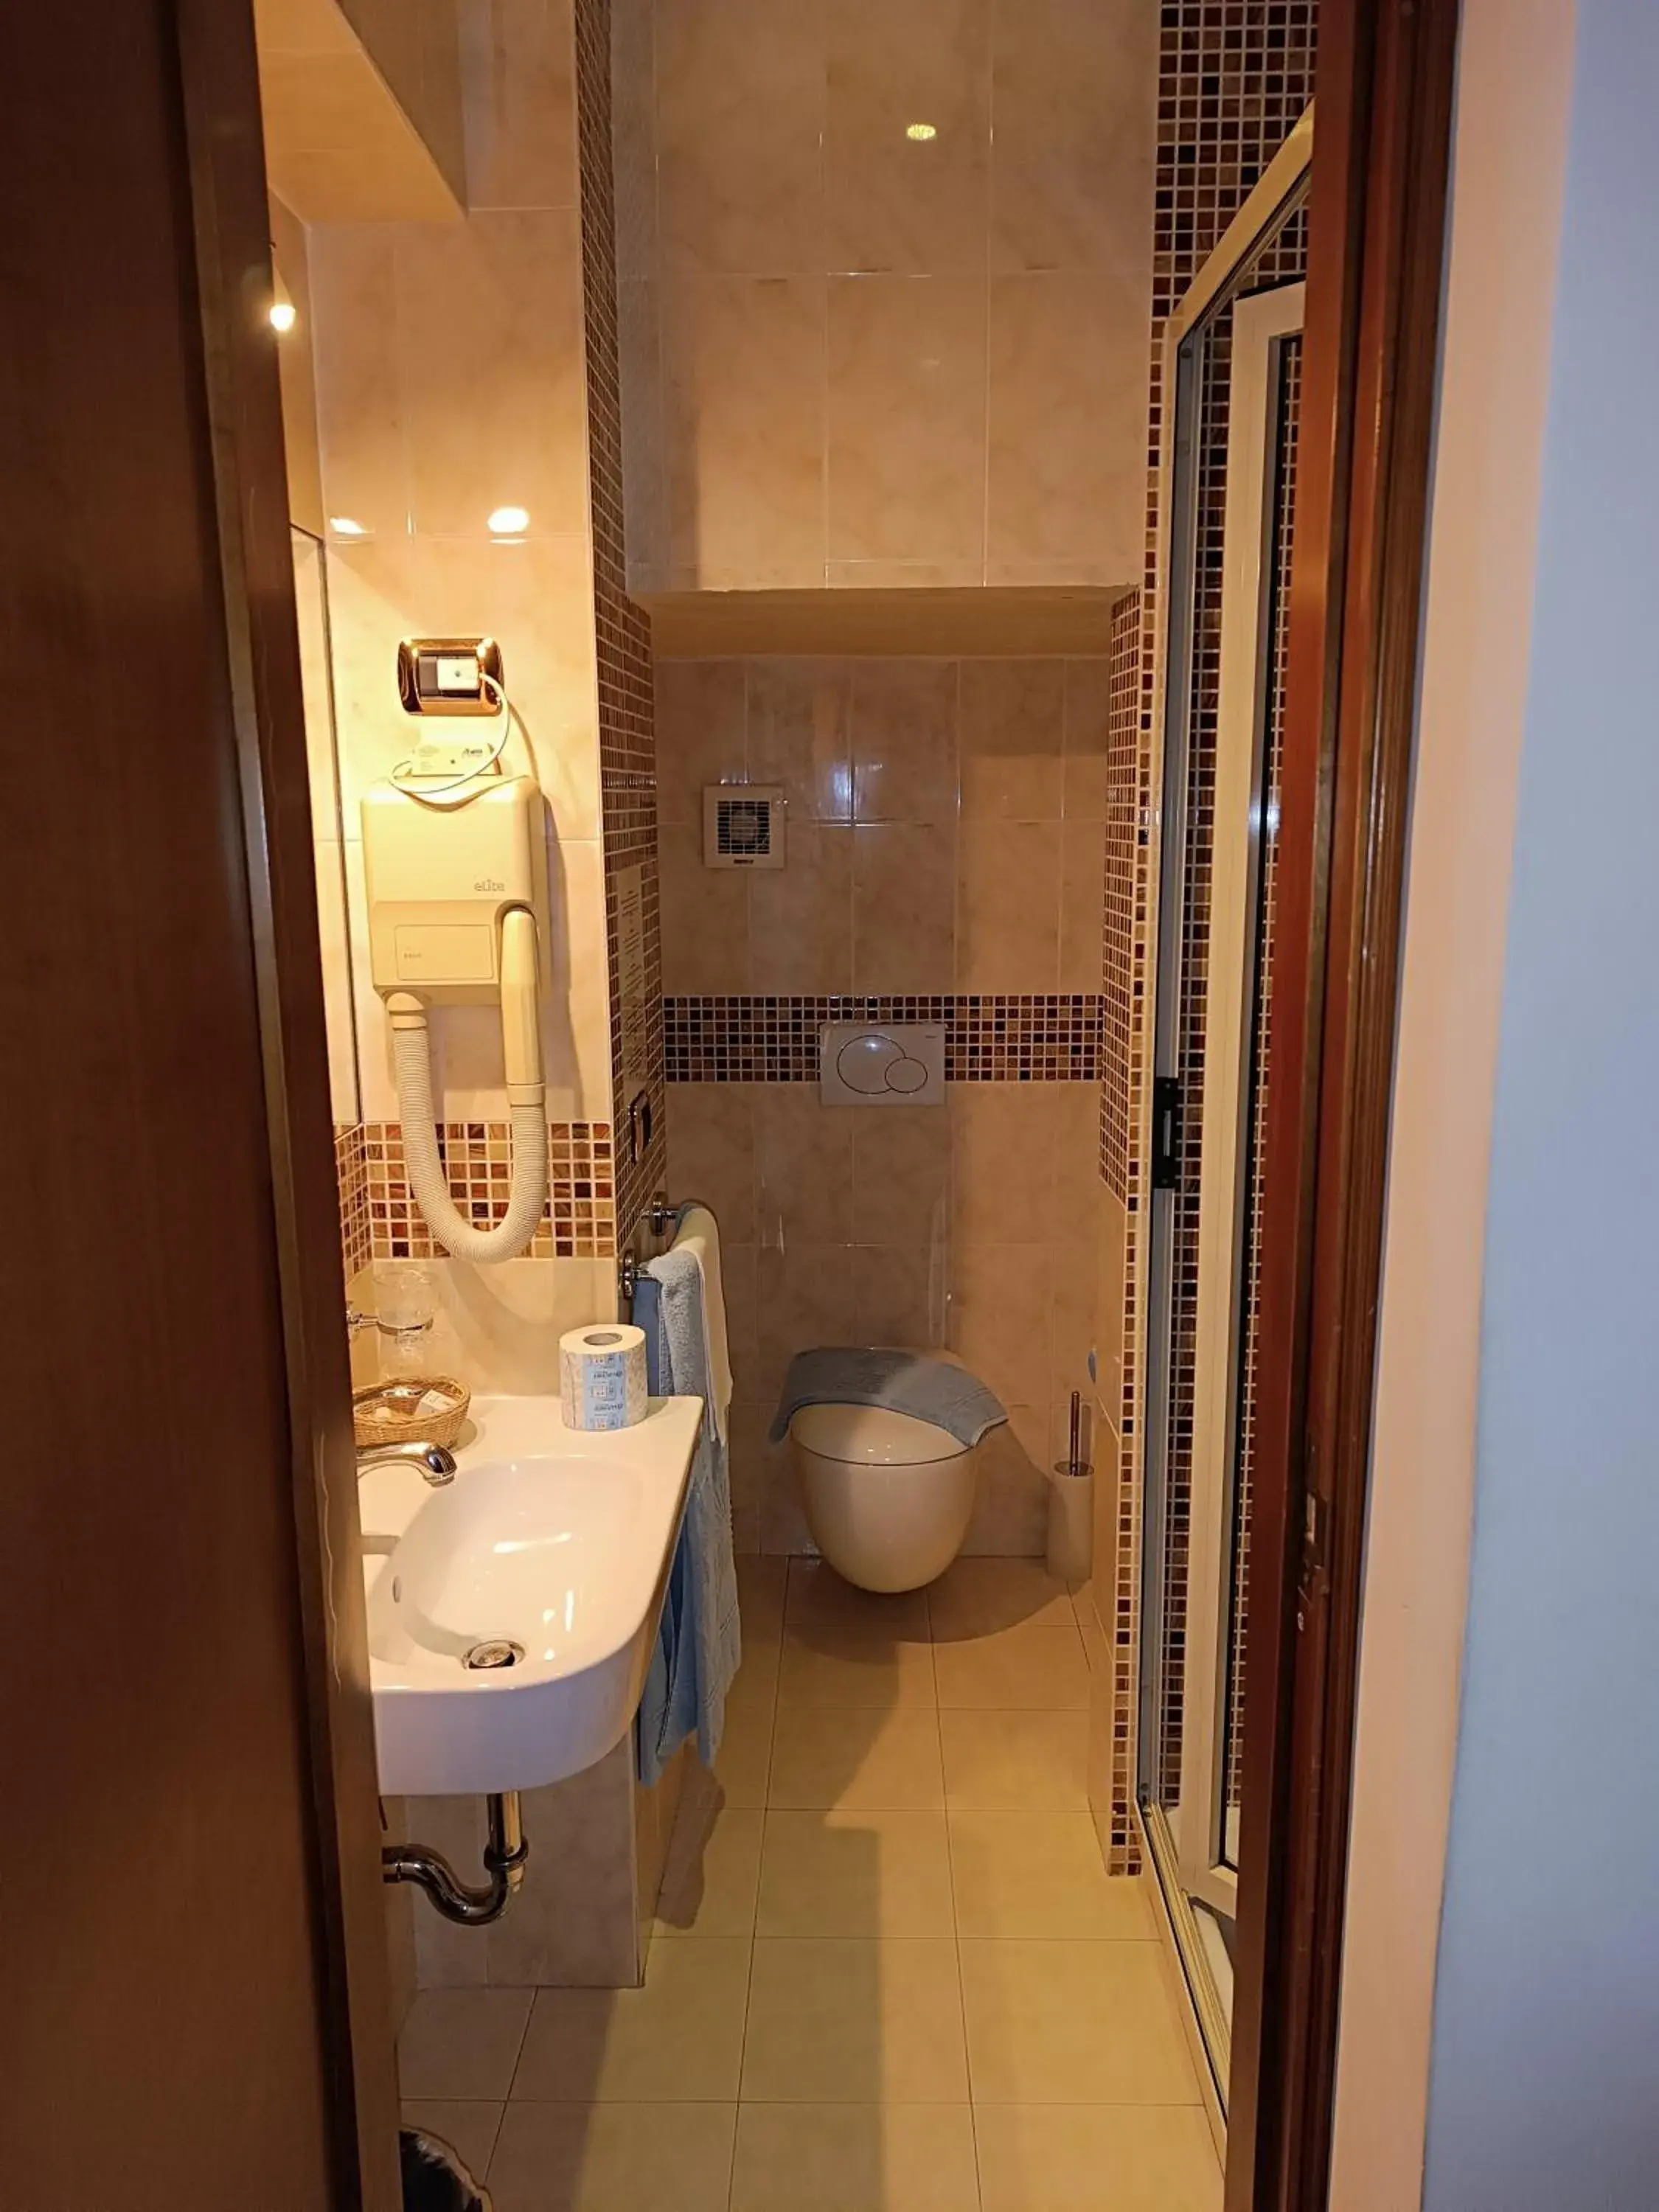 Bathroom in Hotel Ipanema